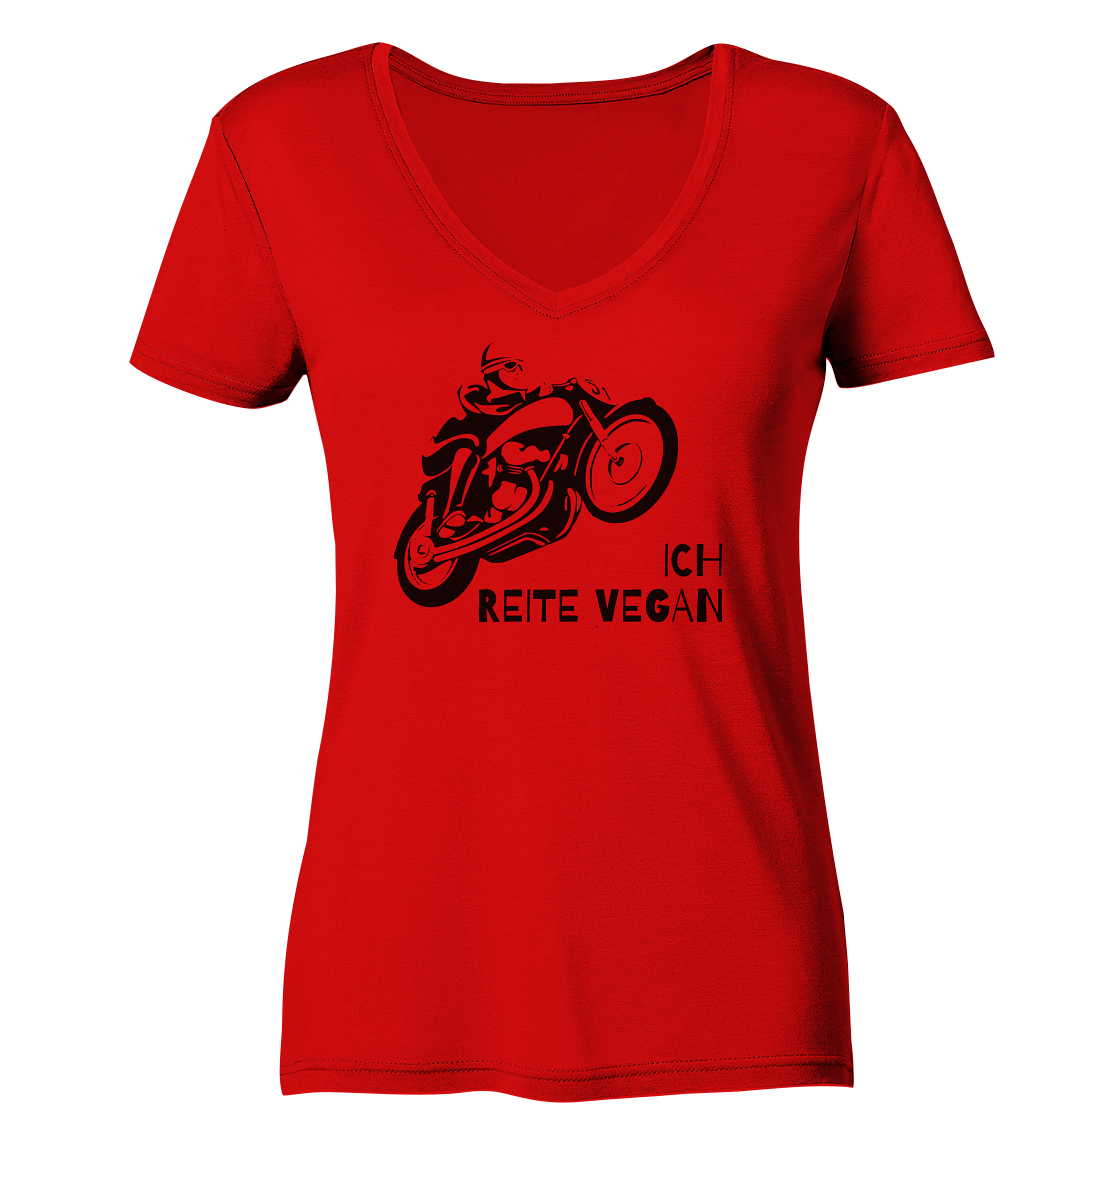 Damen-T-Shirt, V-Ausschnitt mit Aufdruck Motorrad und Spruch "Ich reite vegan", rot